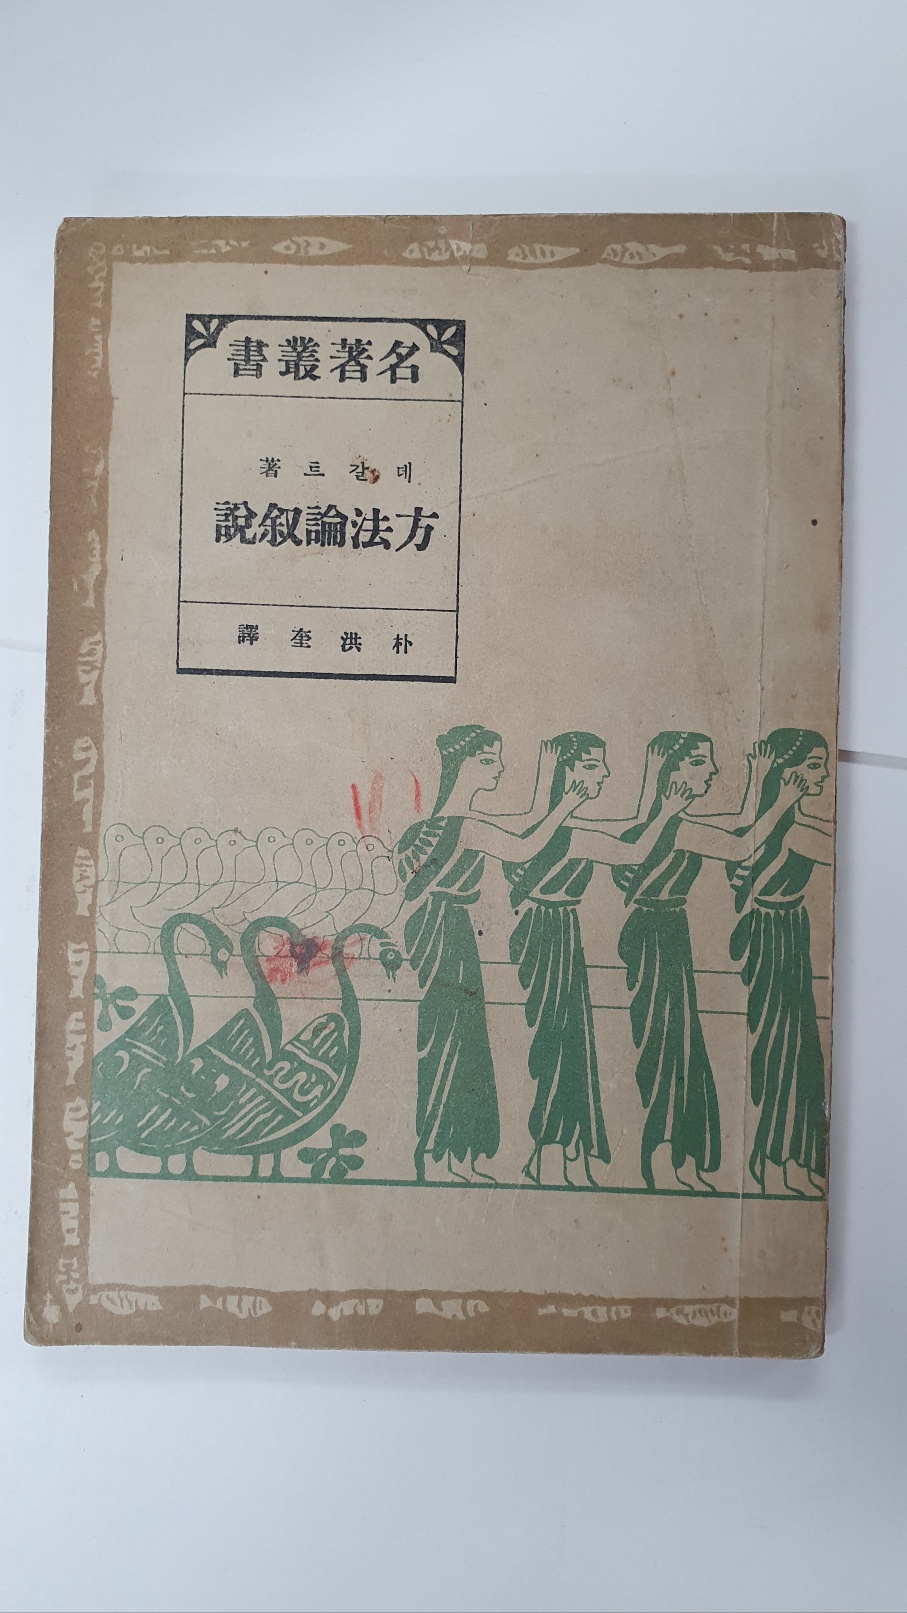 방법론서설, 1948 초판